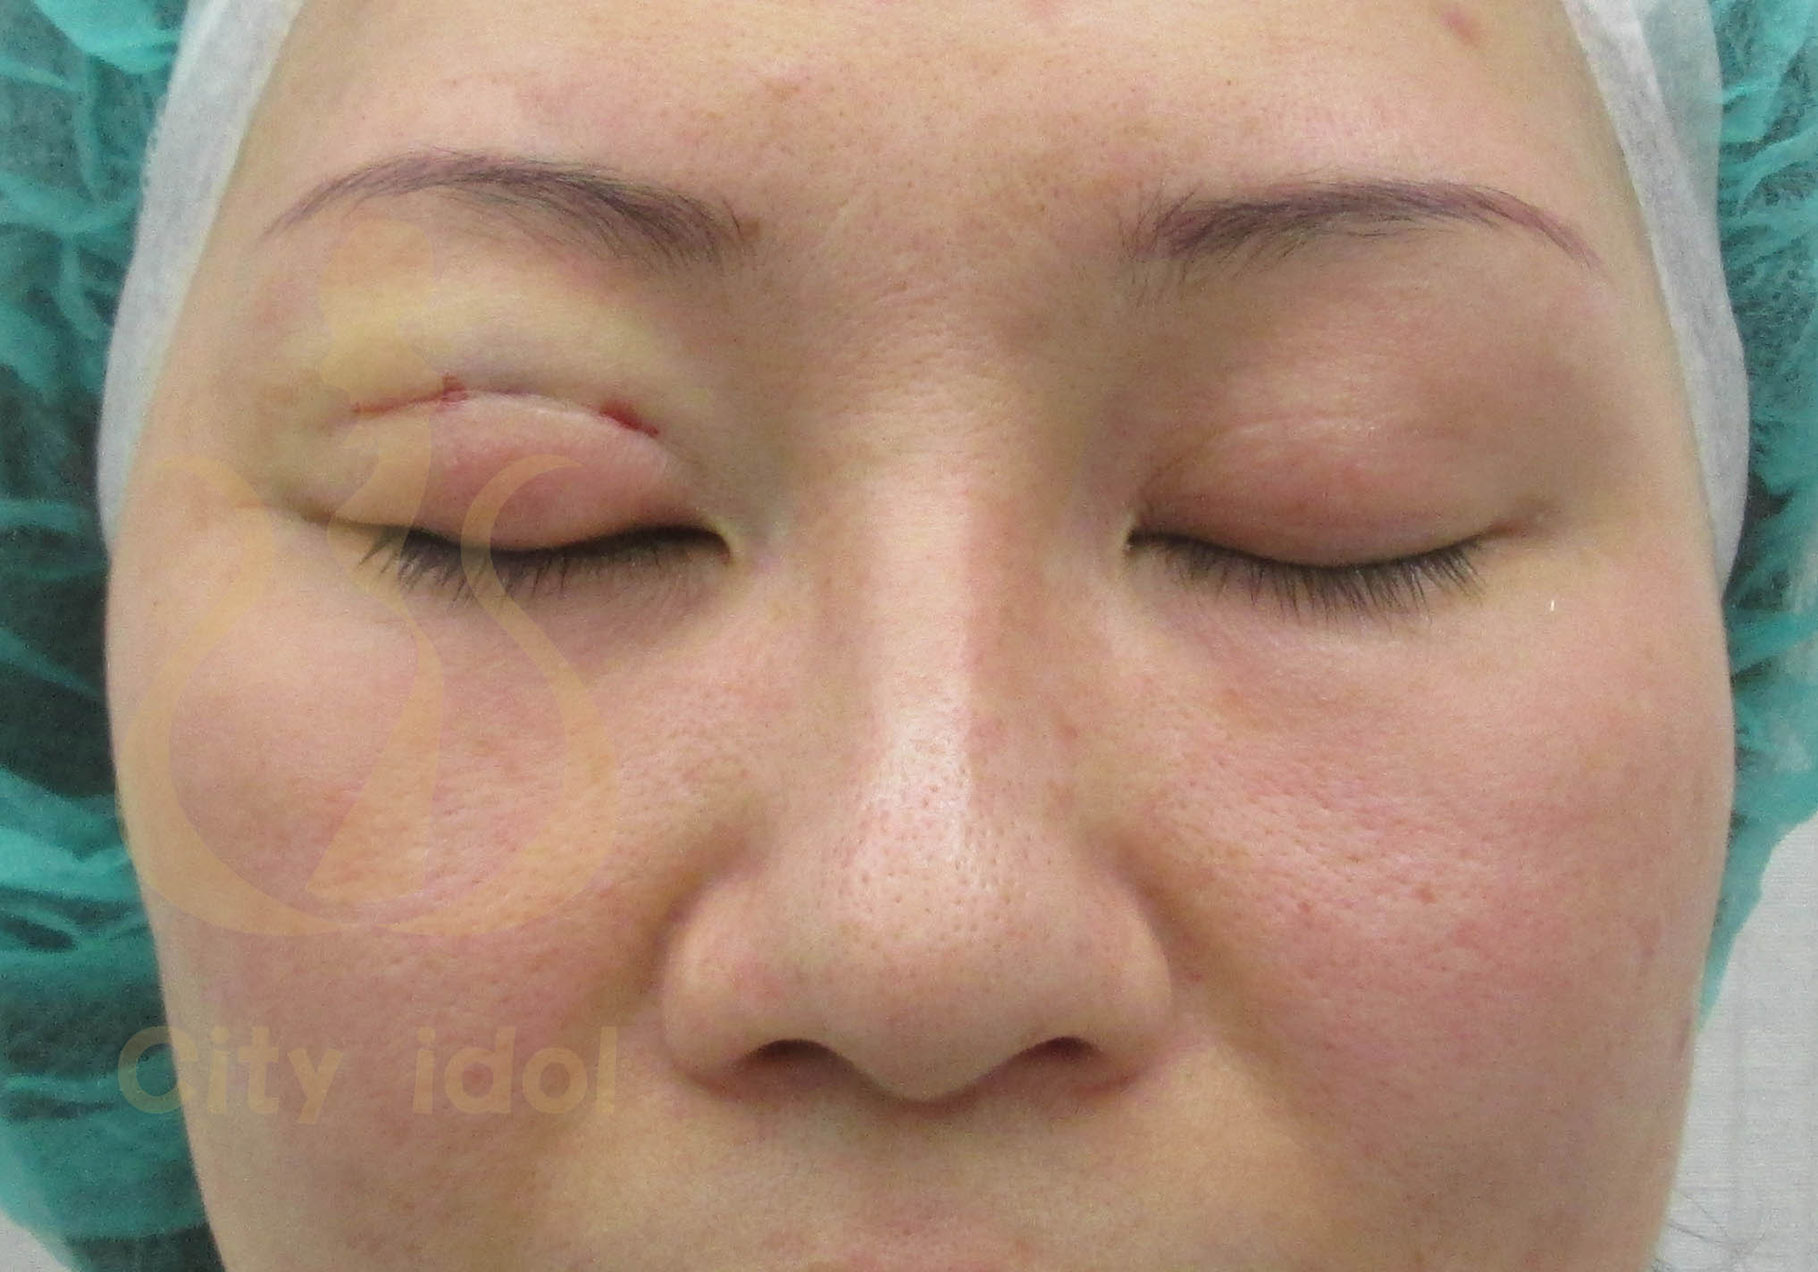 術 後 6 個 月 及 右 側 二 次 釘 書 機 雙 眼 皮 手 術